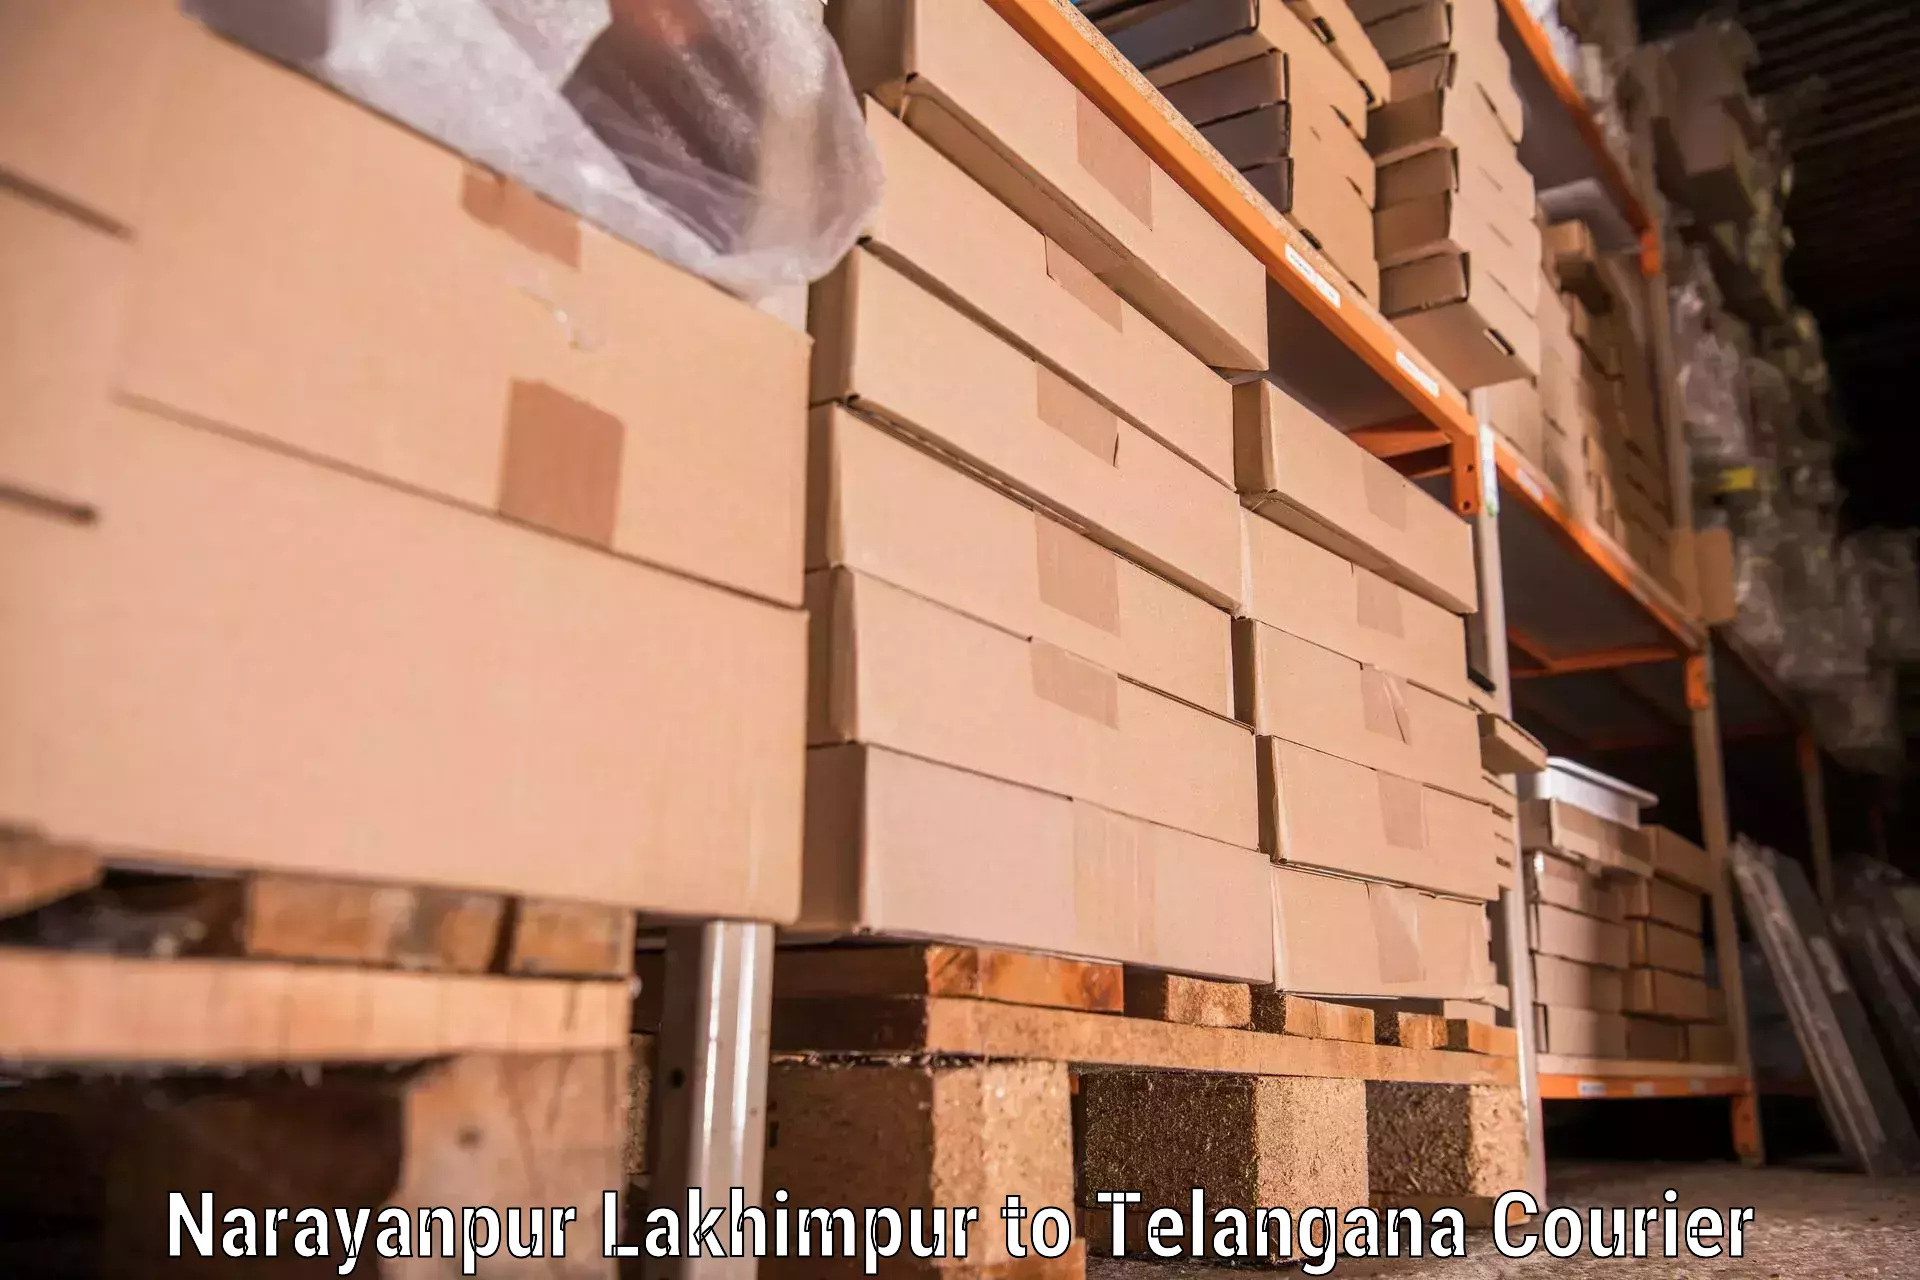 Reliable moving solutions Narayanpur Lakhimpur to Sujatha Nagar